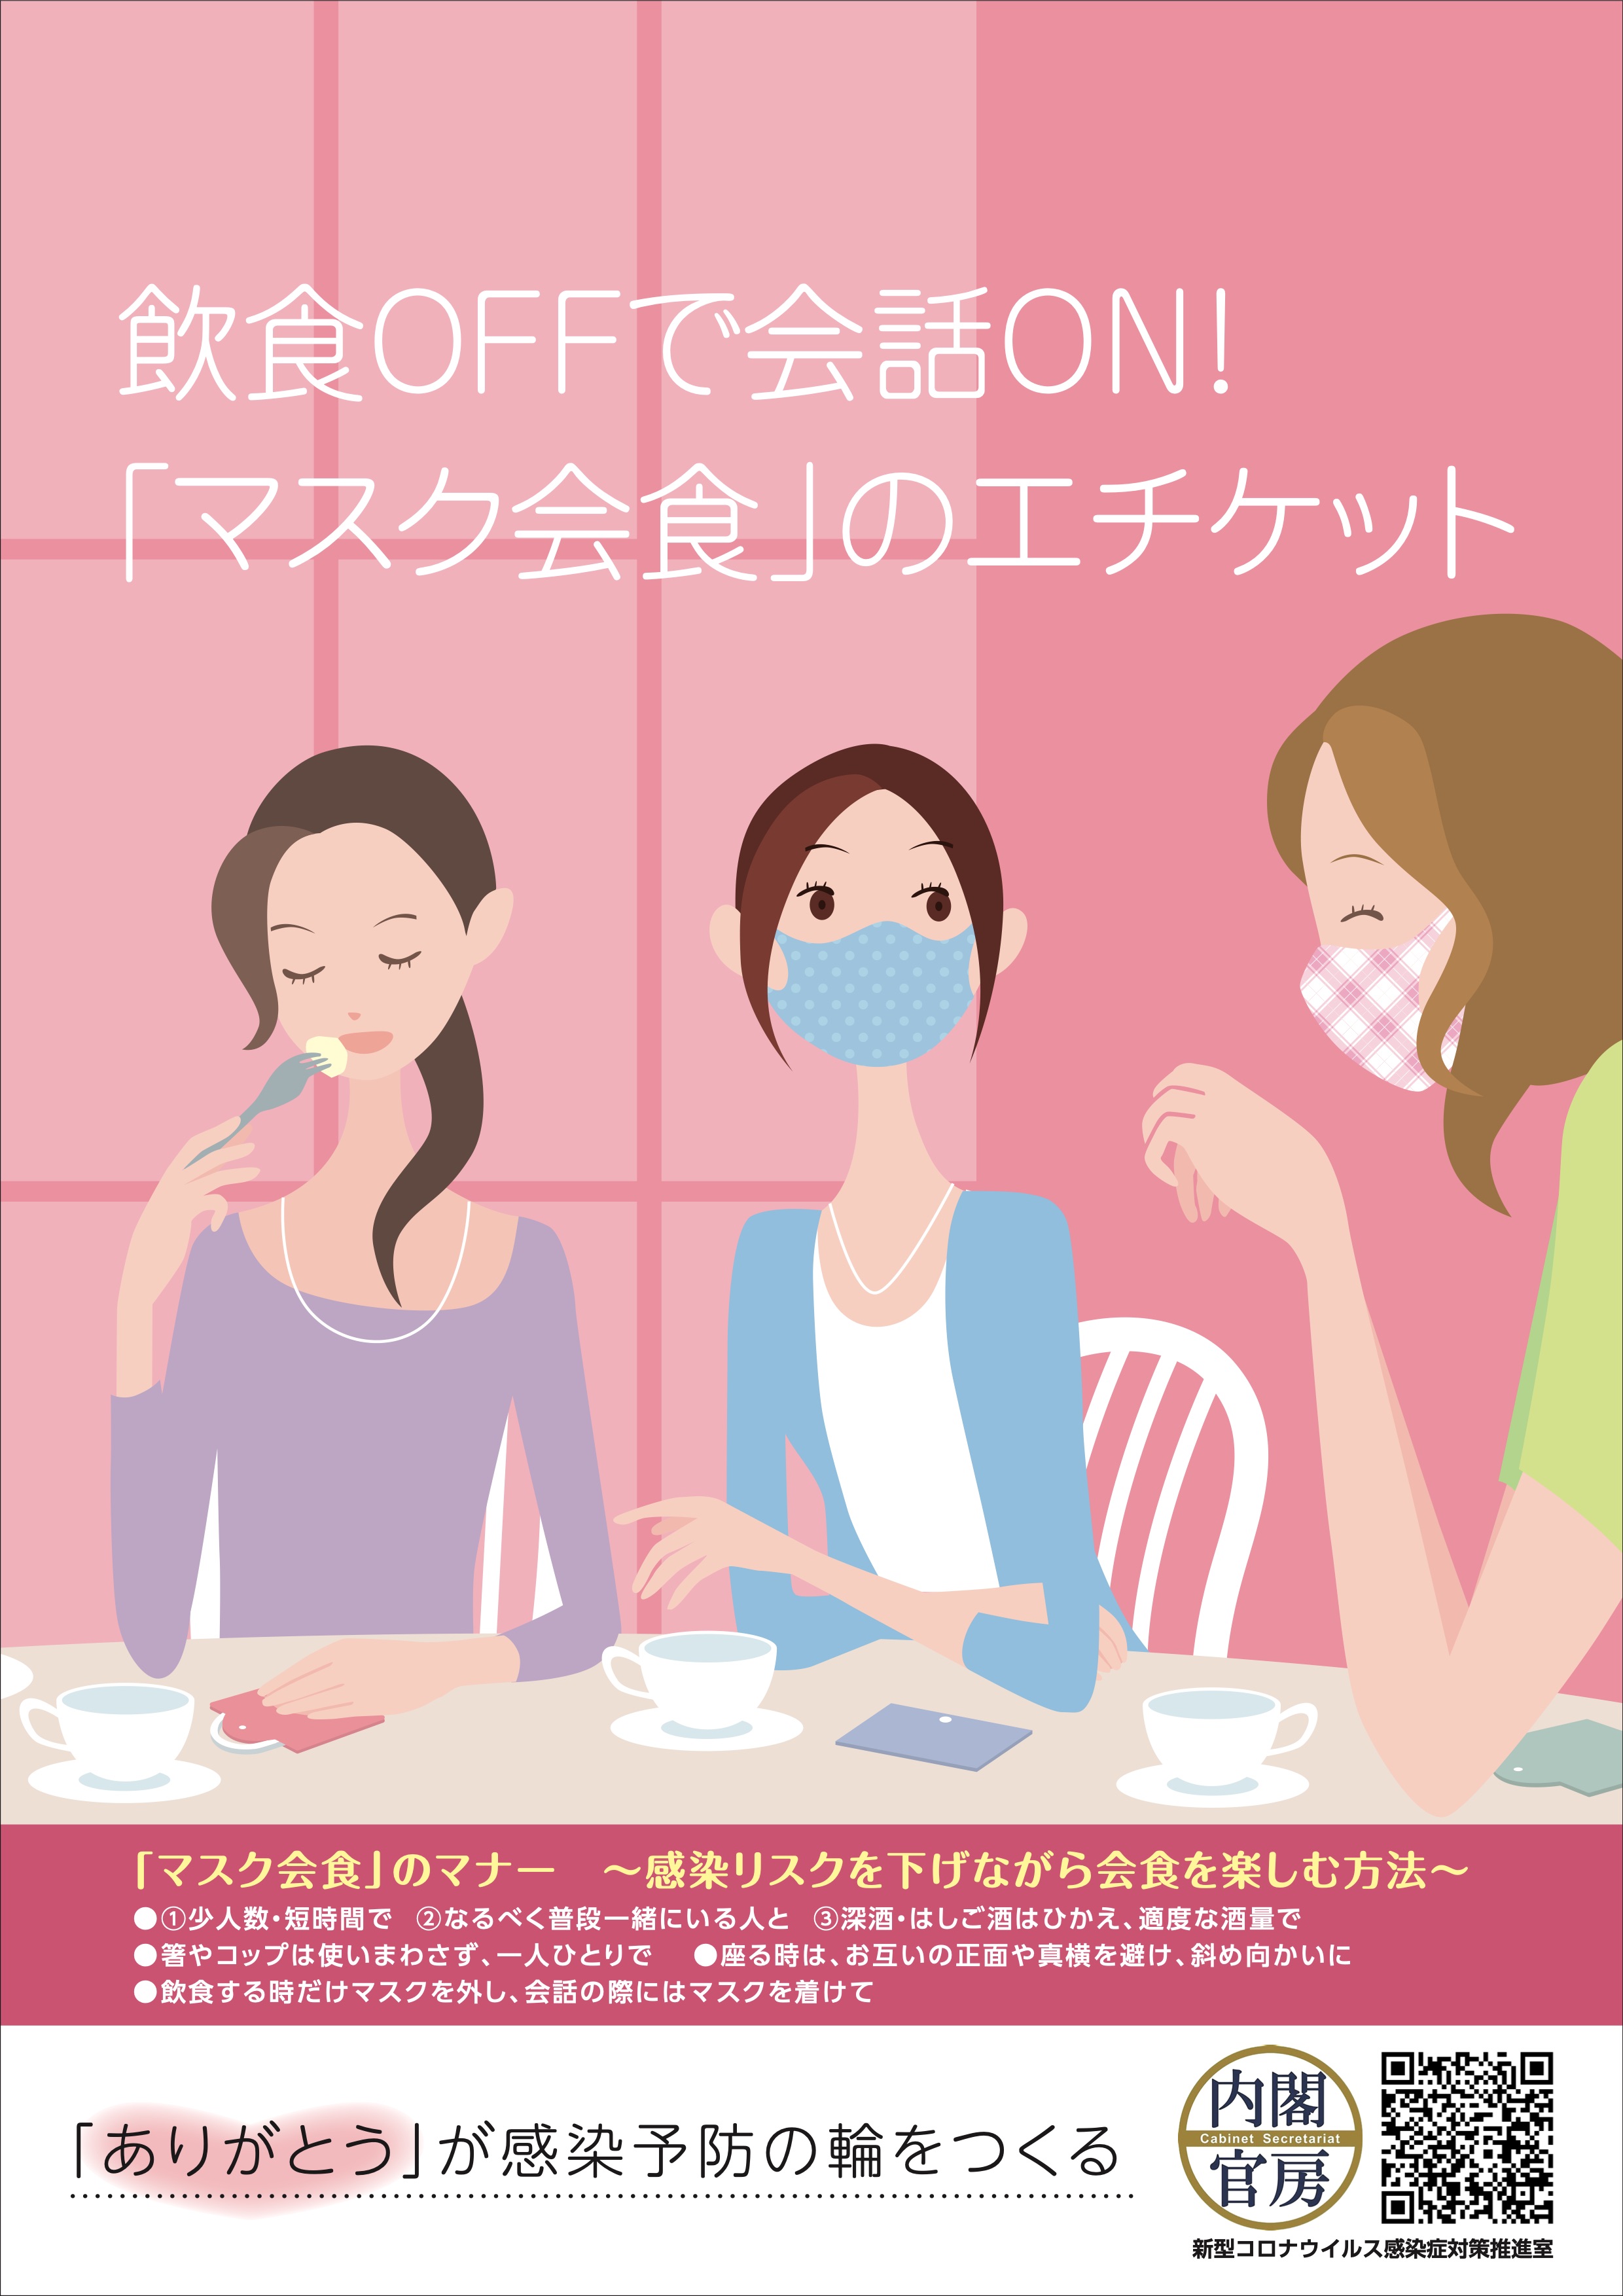 "Beim Essen ab, beim Gespräch auf": Ein weiteres Plakat zur "Mask-Kaishoku"-Benimmregel.